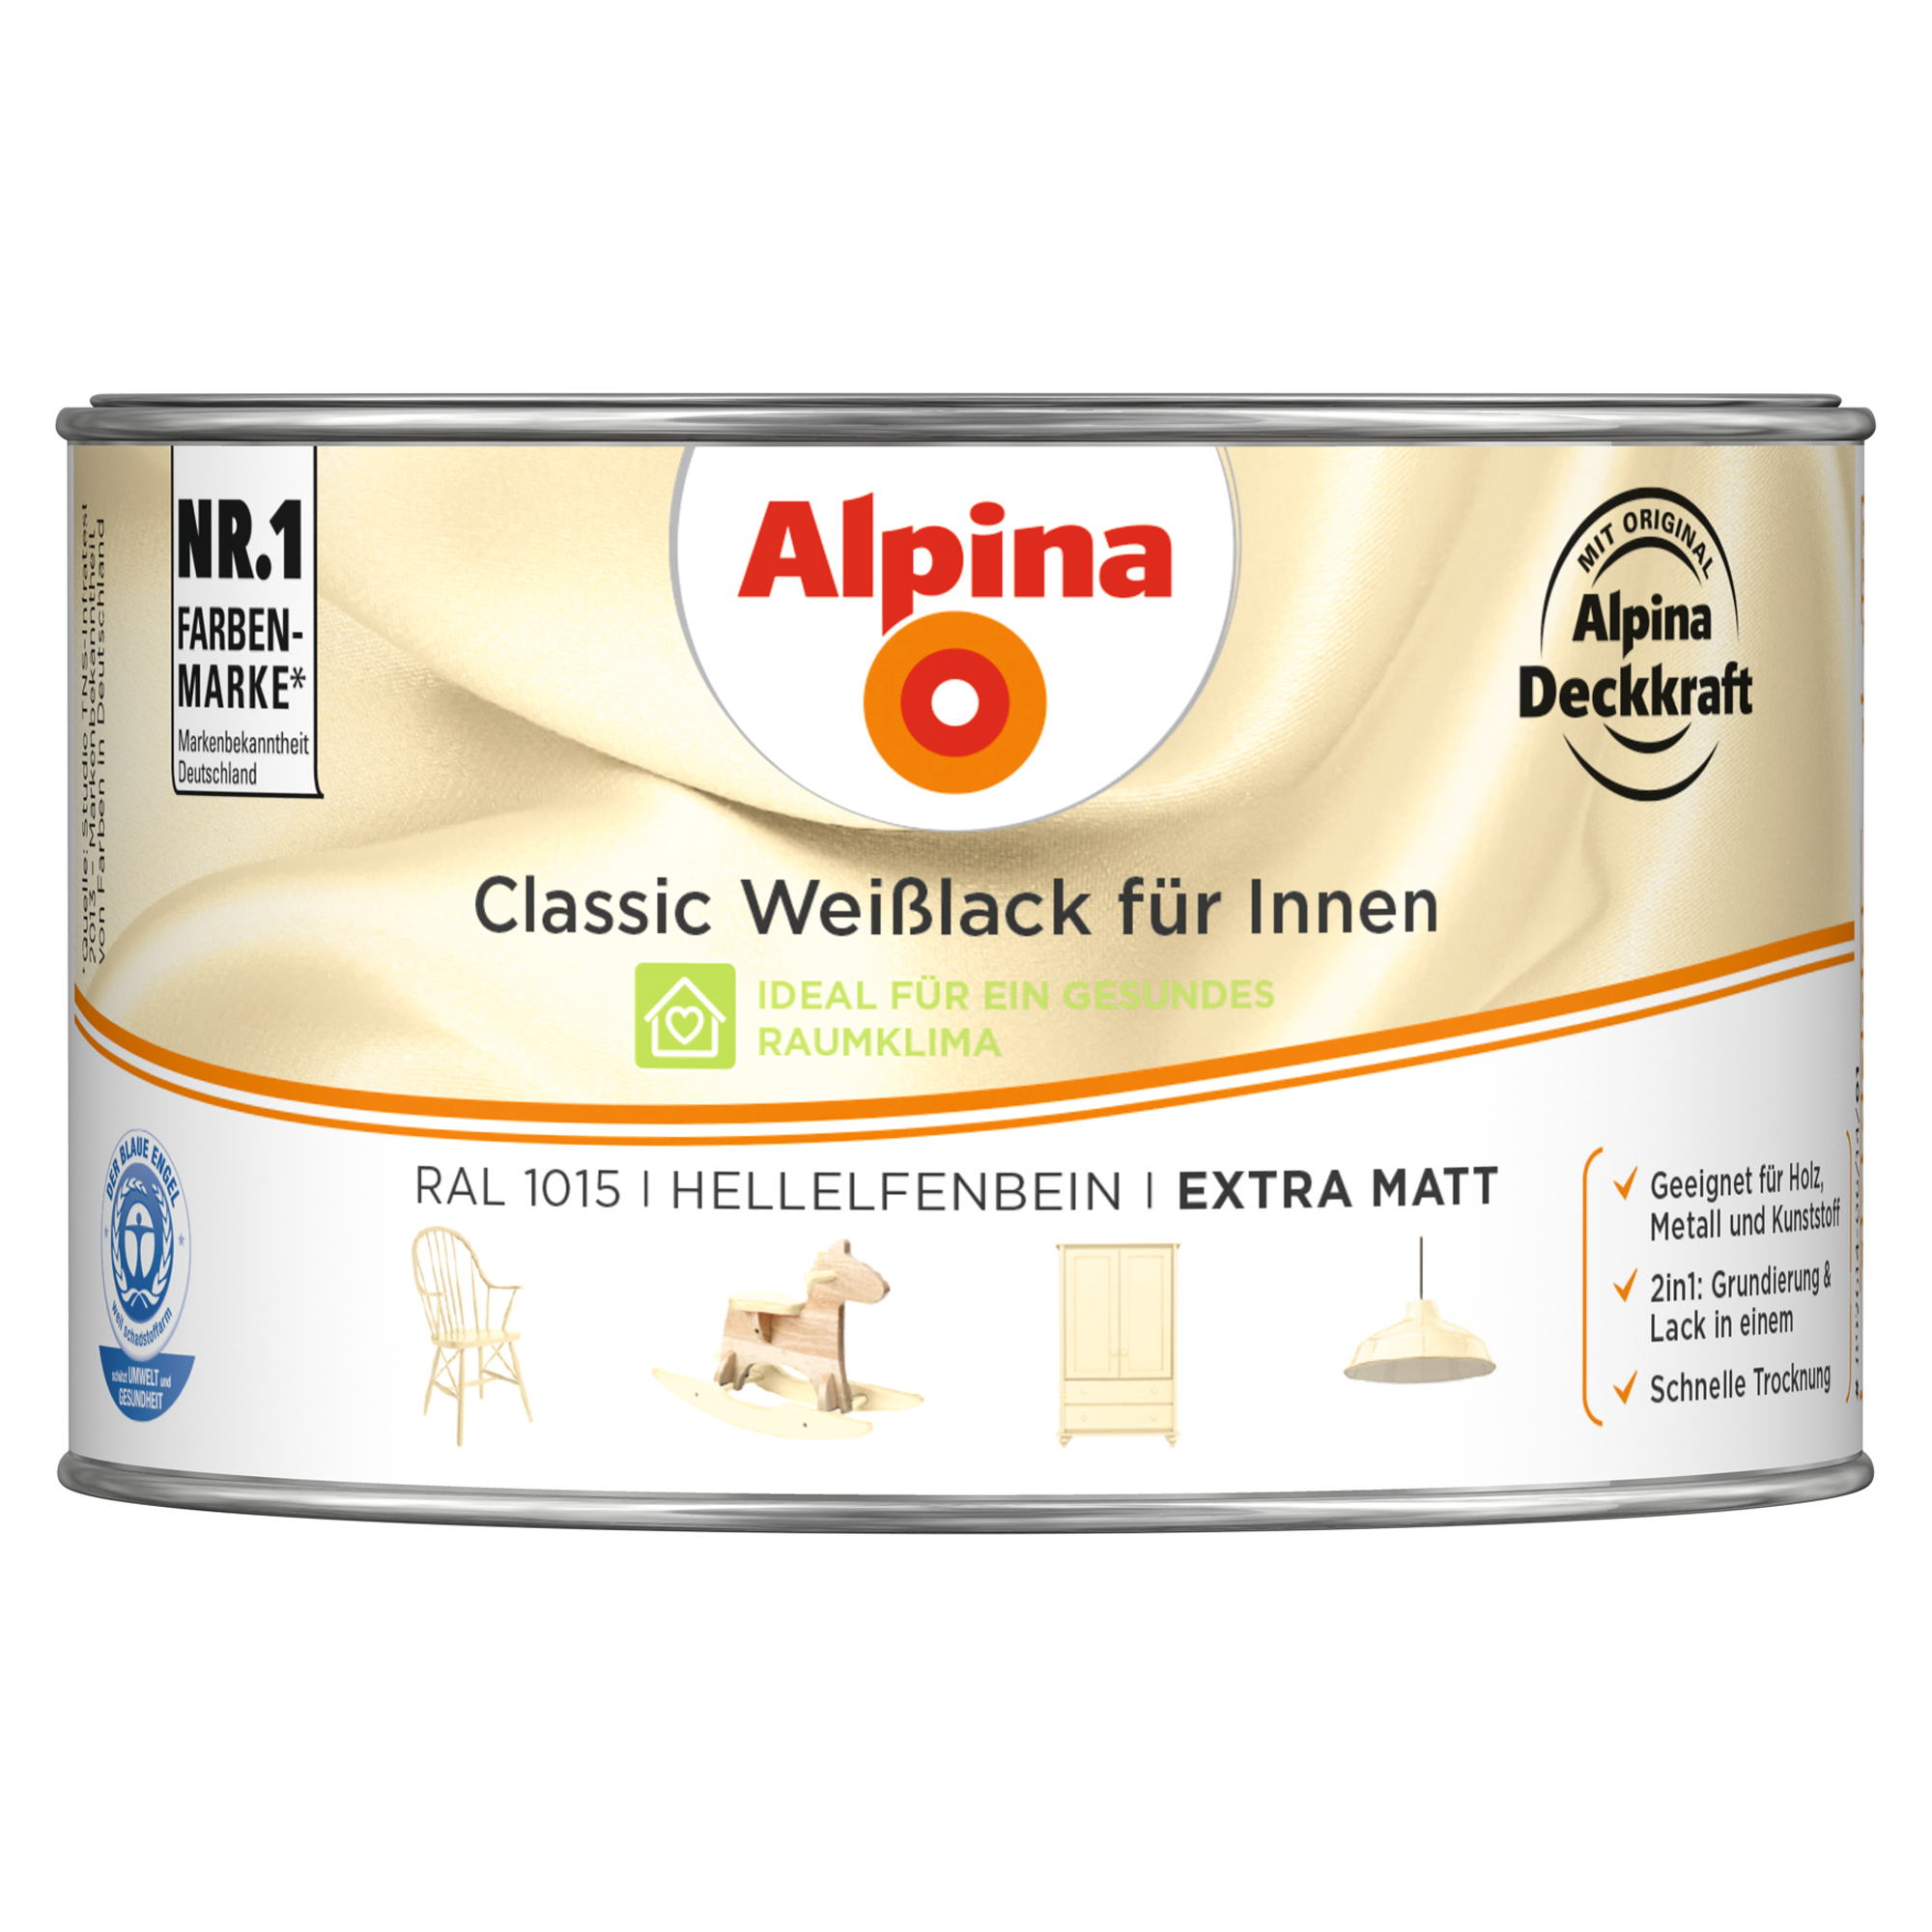 Weißlack für Innen elfenbeinfarben extramatt 300 ml + product picture